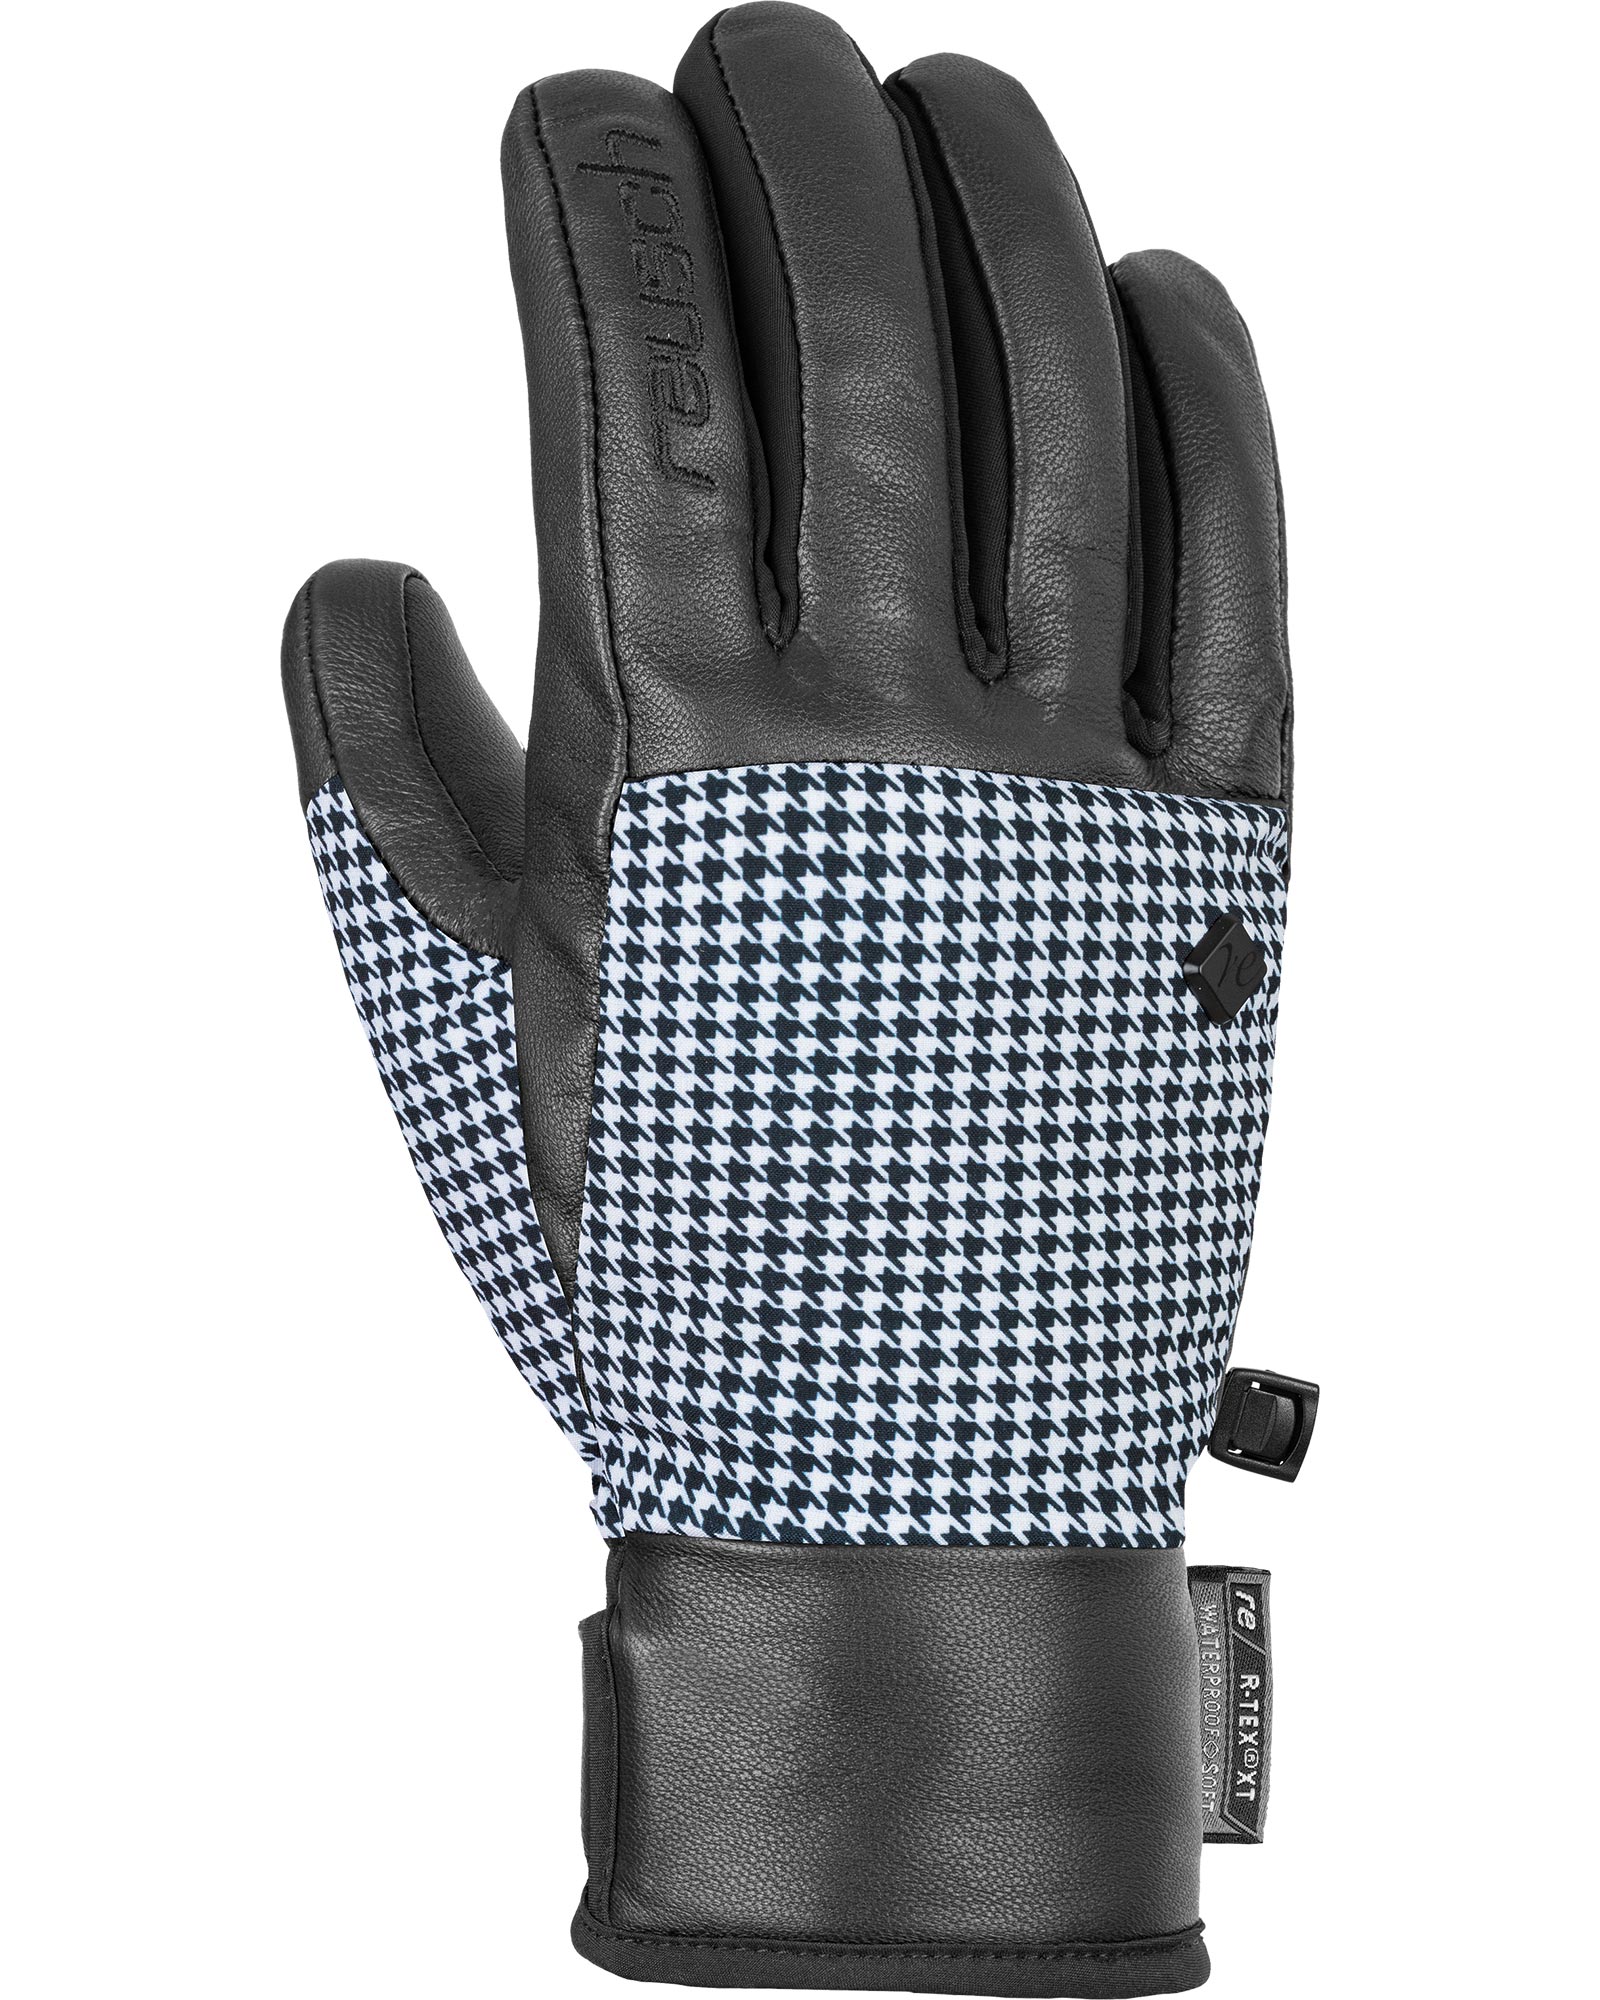 Reusch Giorgia R Tex Women’s Gloves - Black/Pied de Poule Size 7